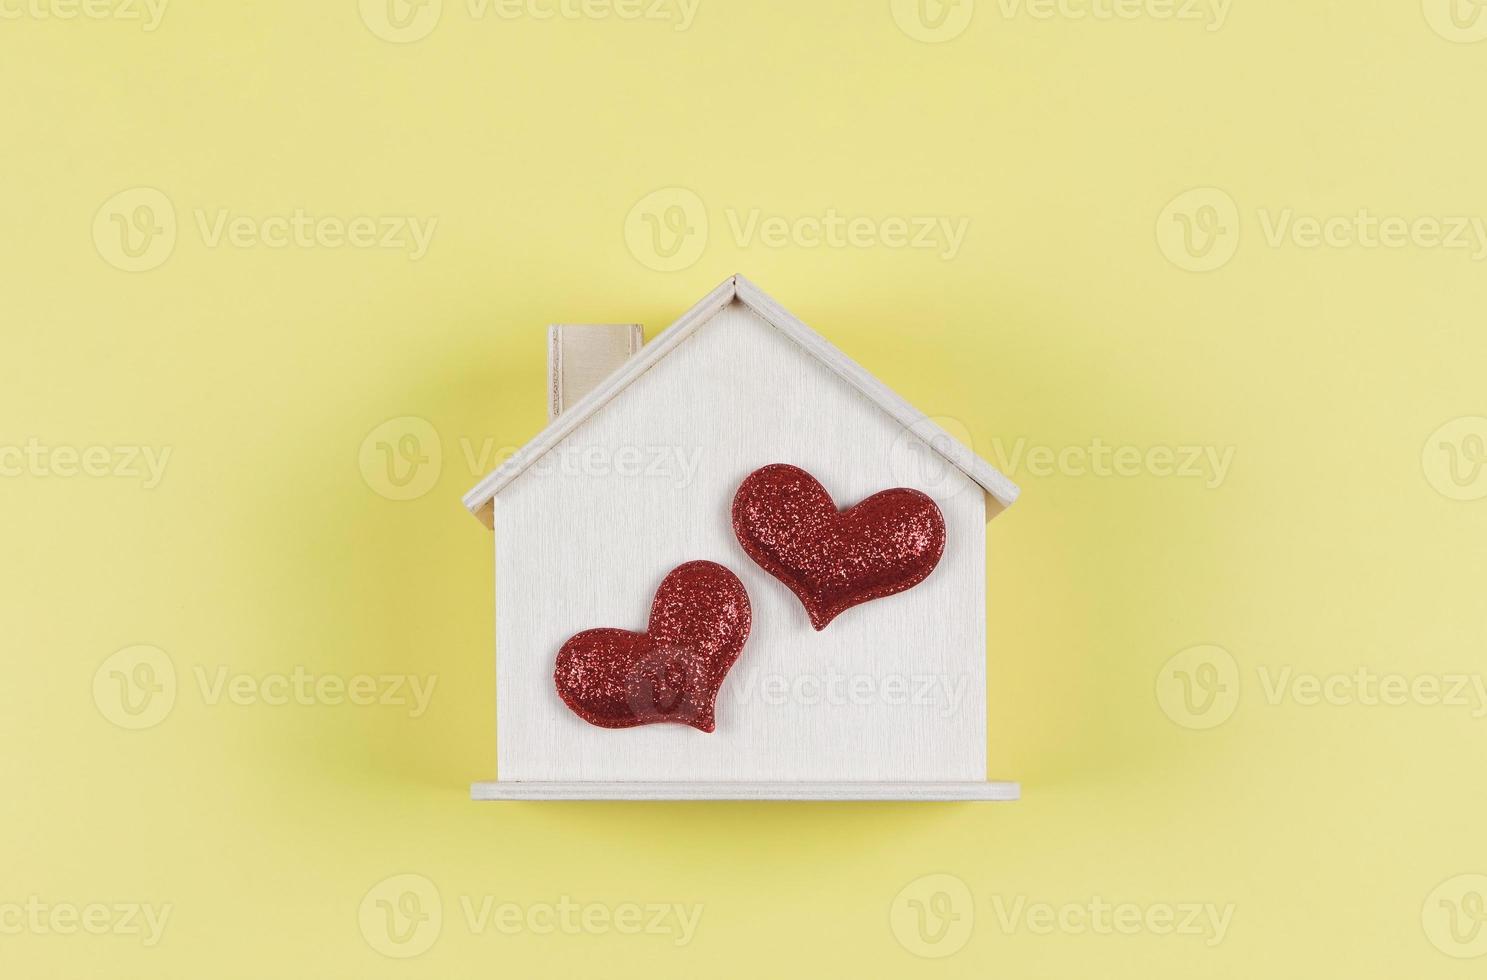 plano laico de de madera modelo casa con dos rojo Brillantina corazones en amarillo antecedentes. sueño casa , hogar de amar, fuerte relación, san valentin foto